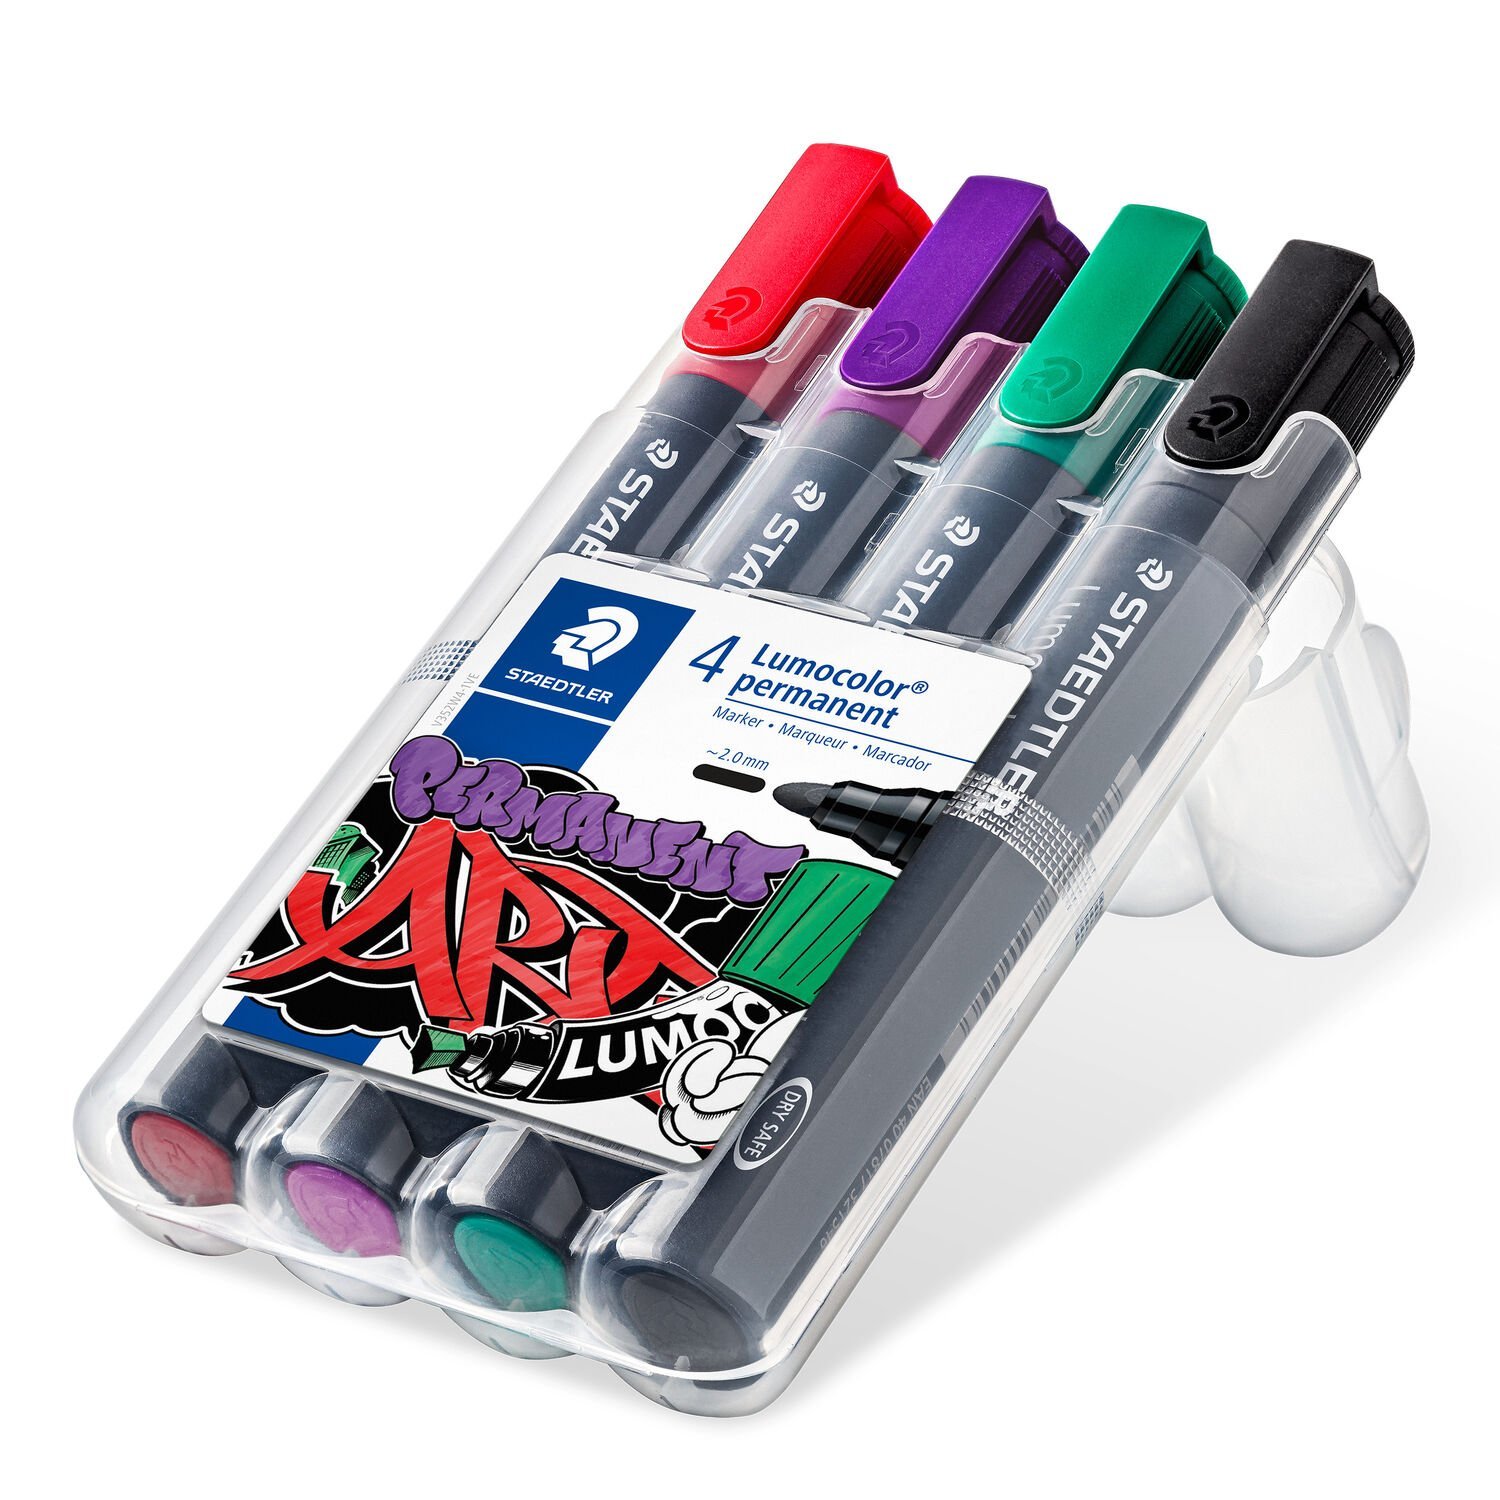 nachfüllbar STAEDTLER Box mit 4 Farben STAEDTLER 350 WP4 Permanentmarker Lumocolor 